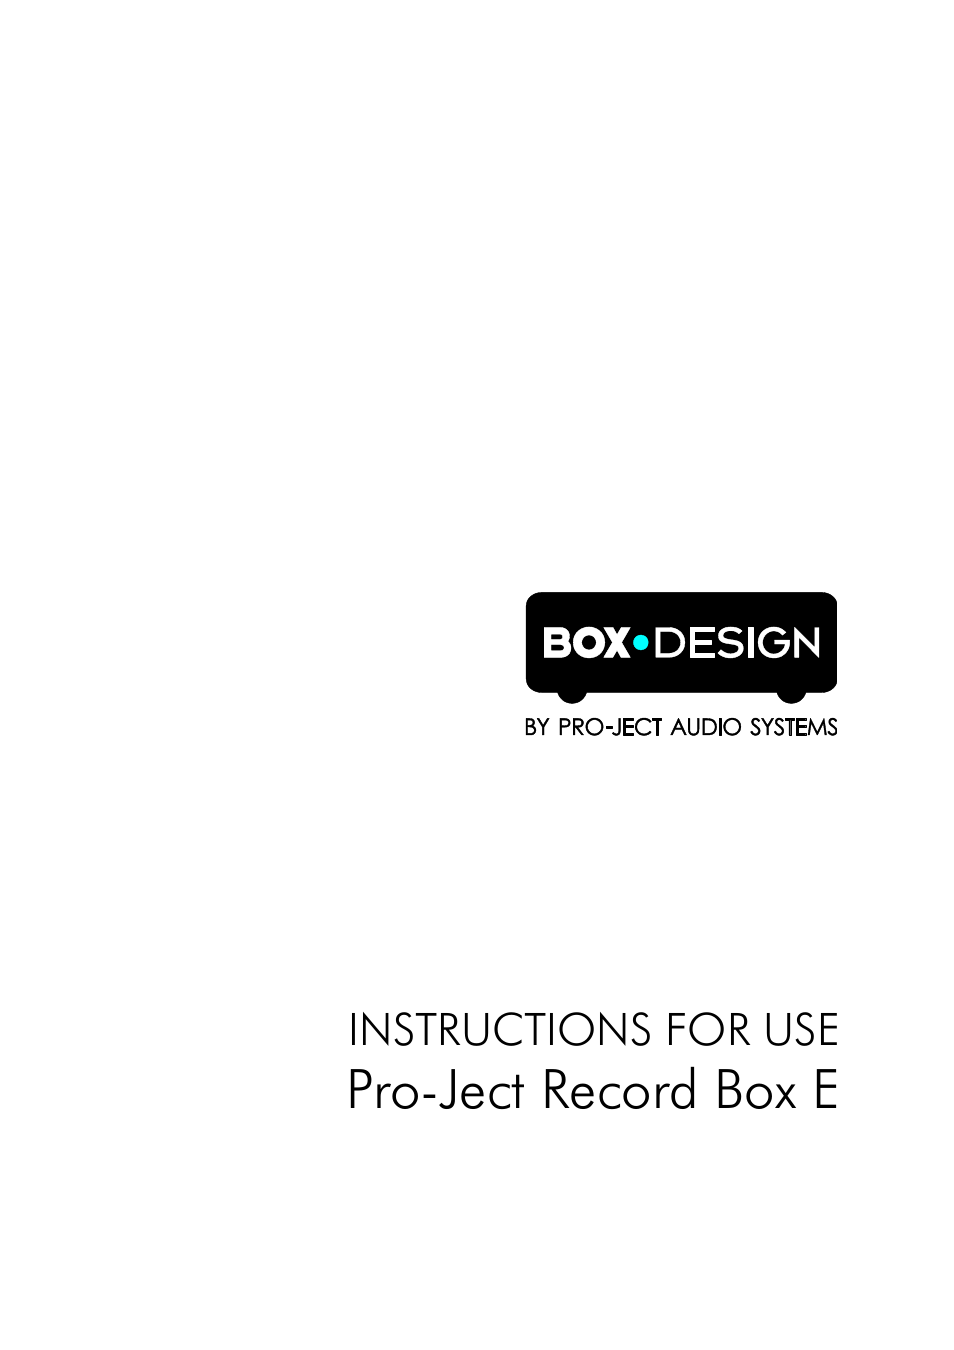 Record Box E